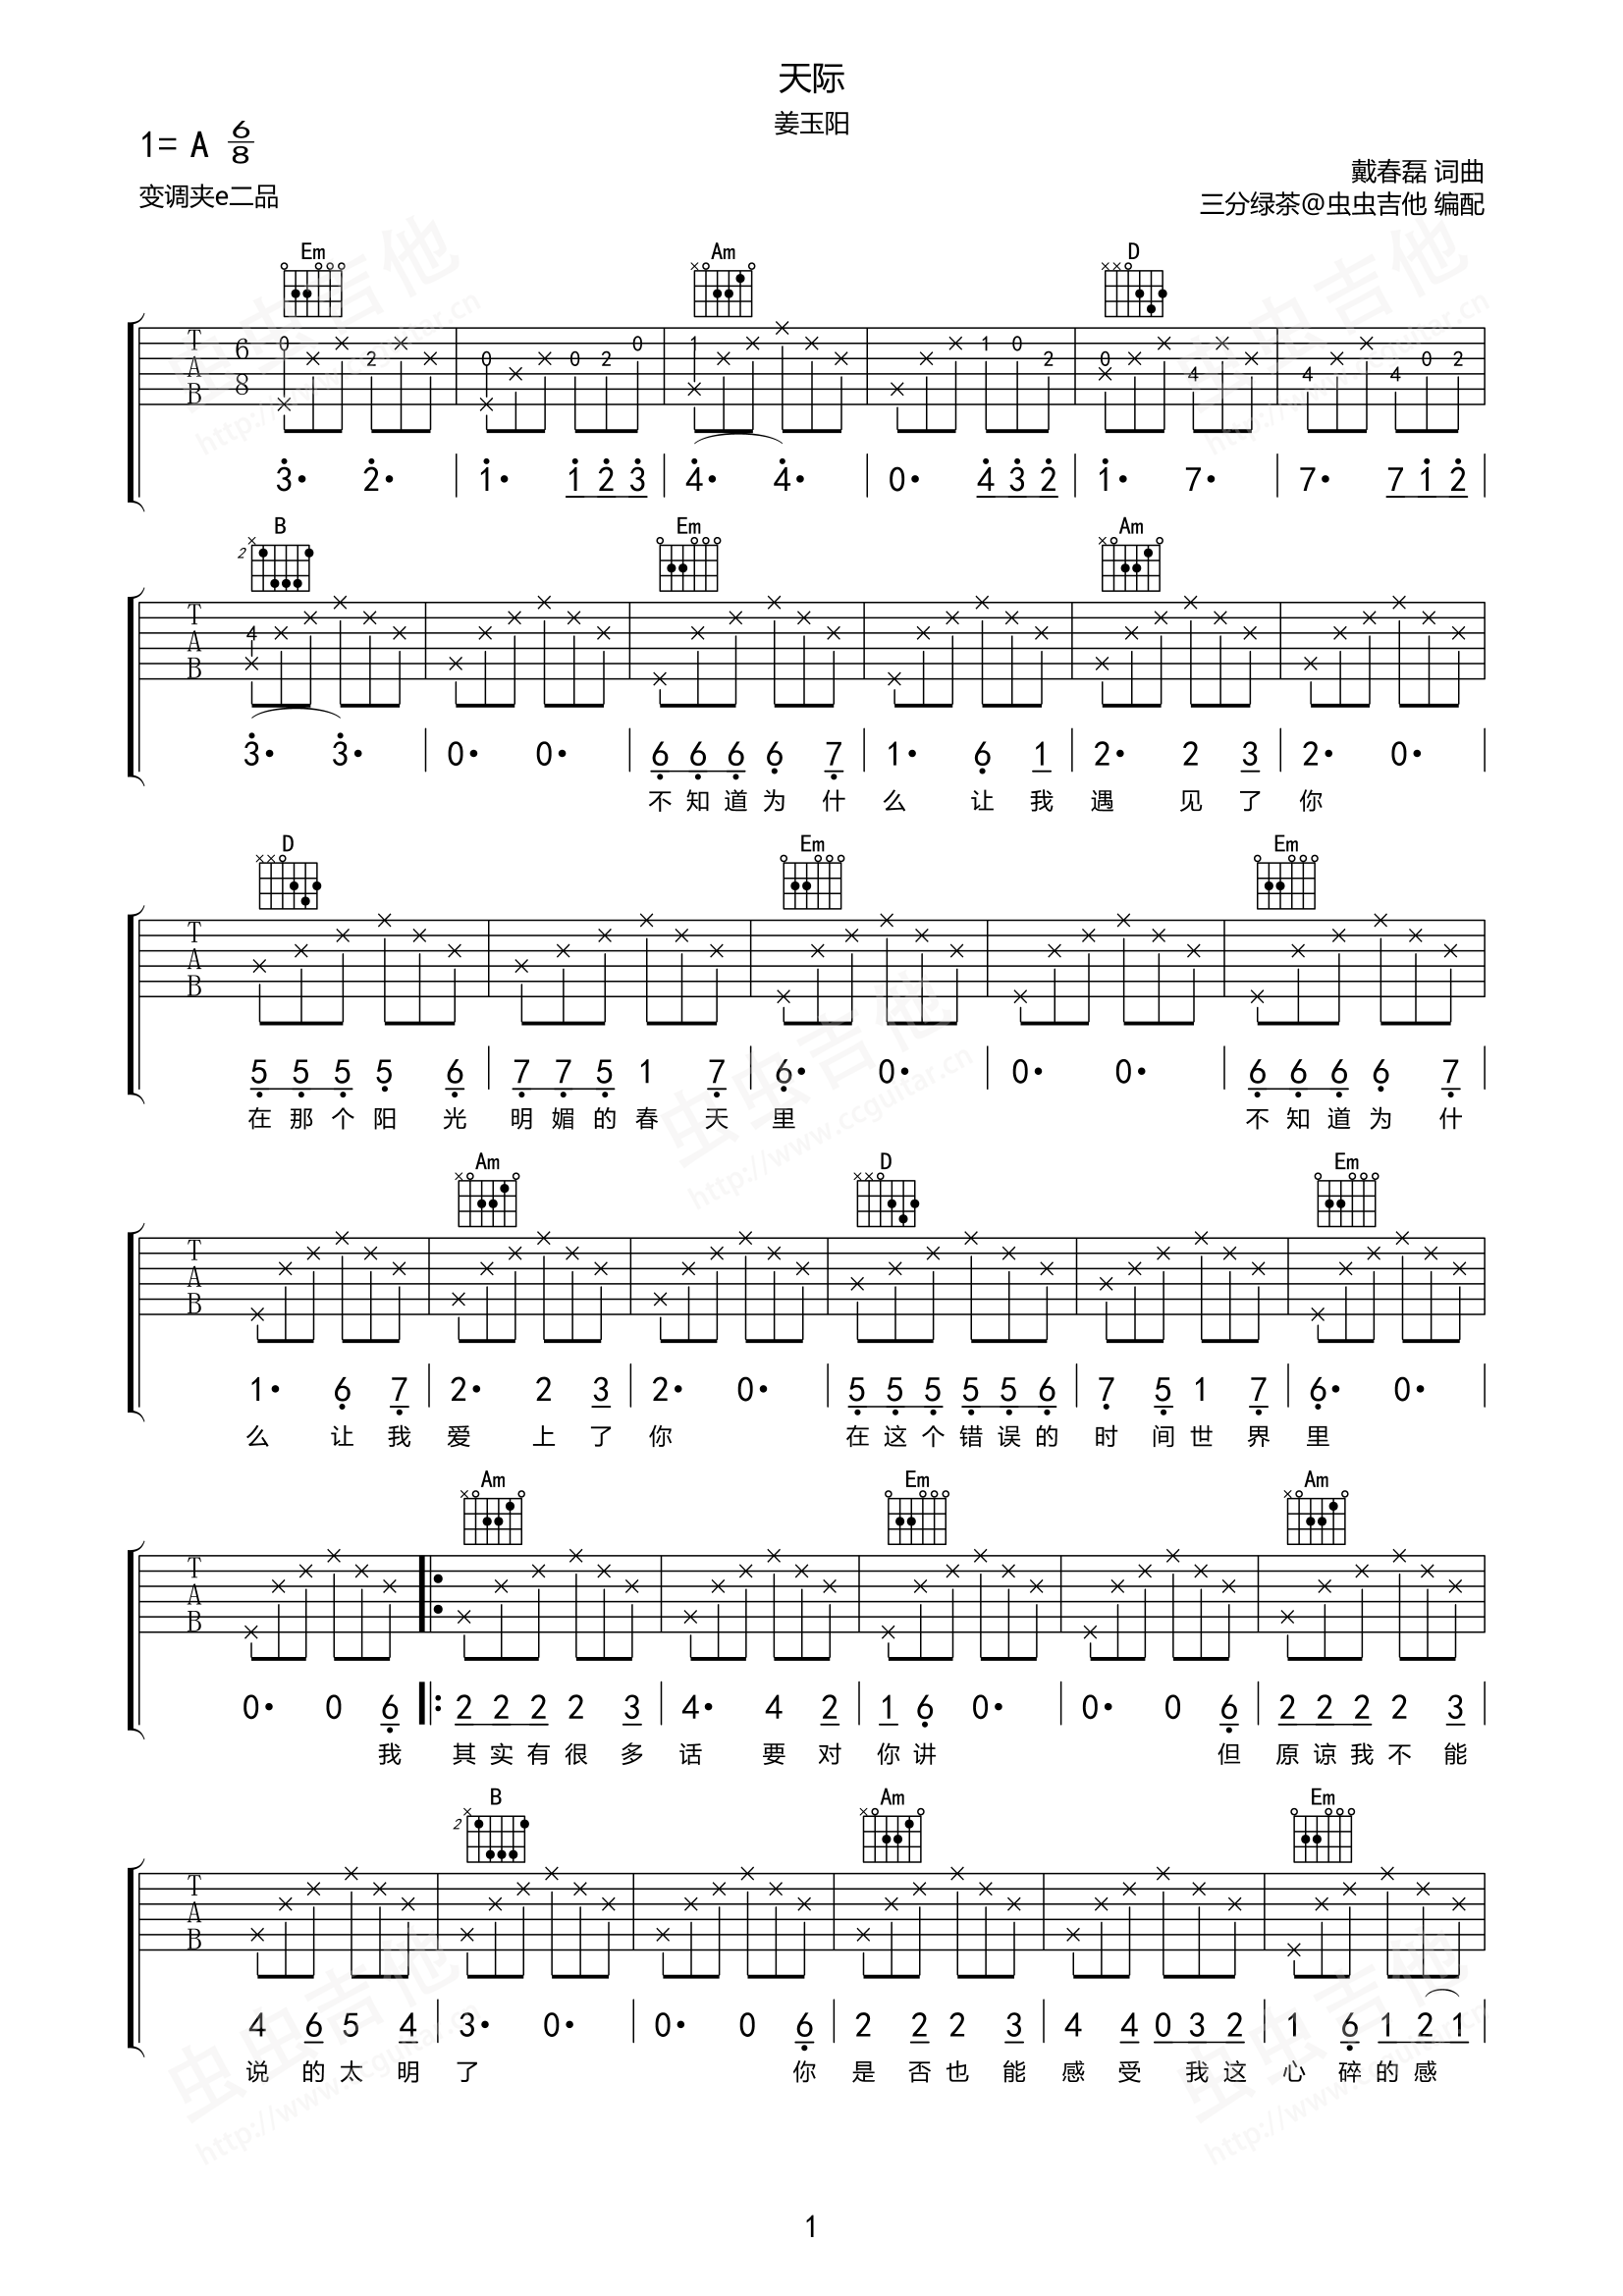 Dm7♭9 guitar chord - GtrLib Chords